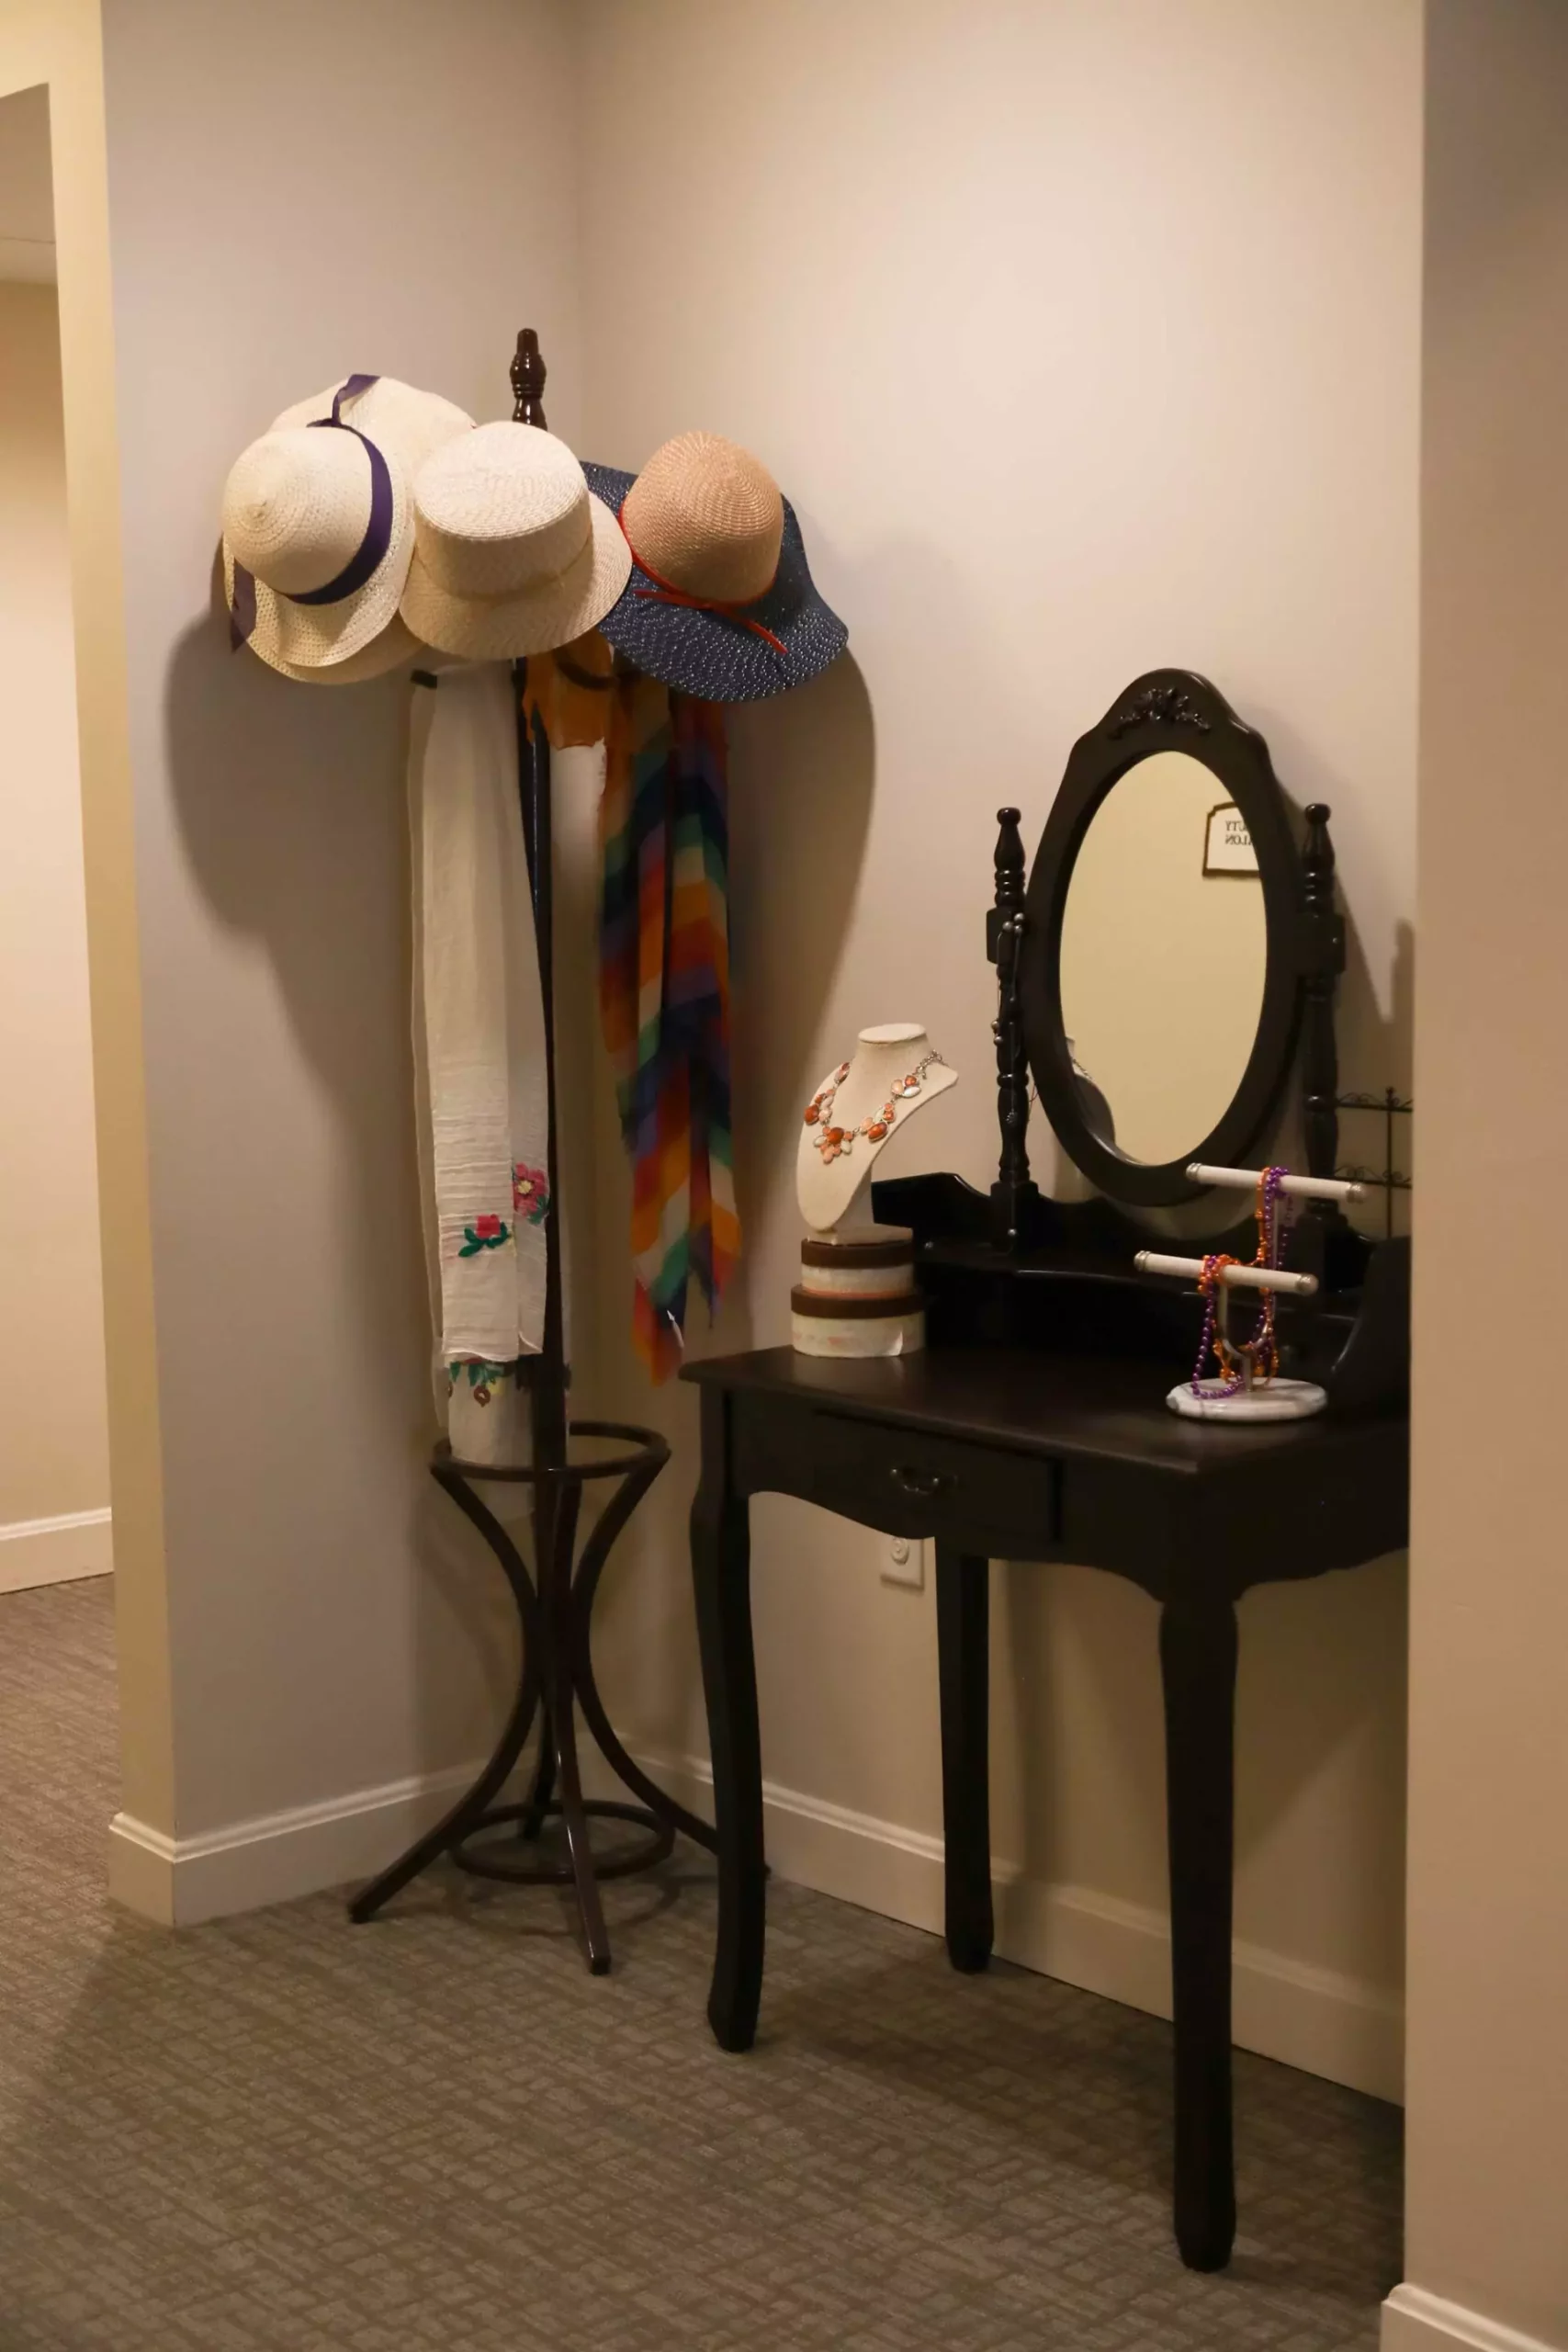 Coat hanger and mirror